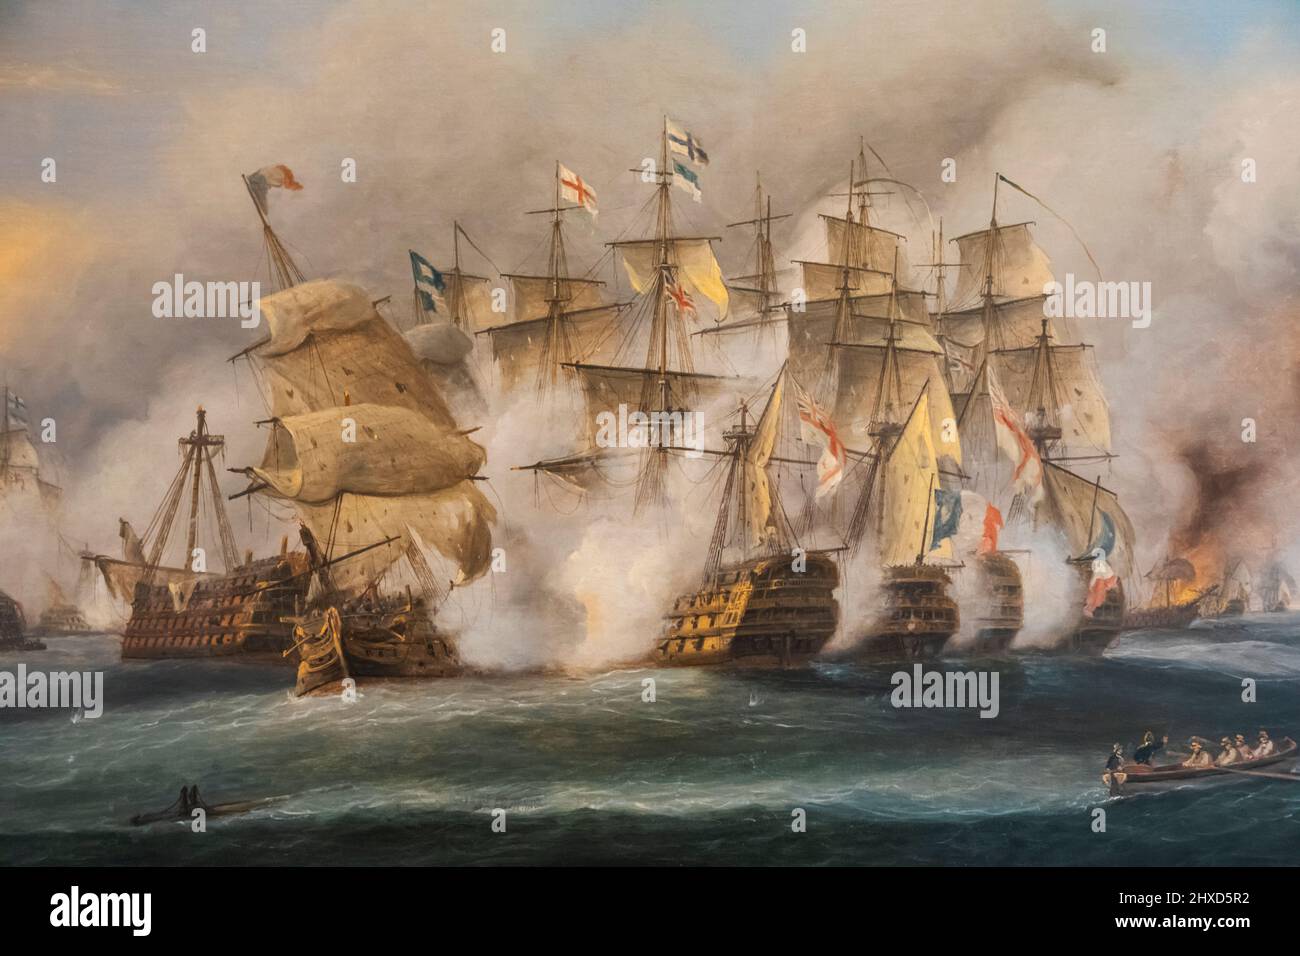 Angleterre, Hampshire, Portsmouth, chantier naval historique de Portsmouth, Musée national de la Marine royale, peinture à l'huile intitulée « la bataille de Trafalgar » représentant la scène le 21 octobre 1805 par Thomas Luny Banque D'Images